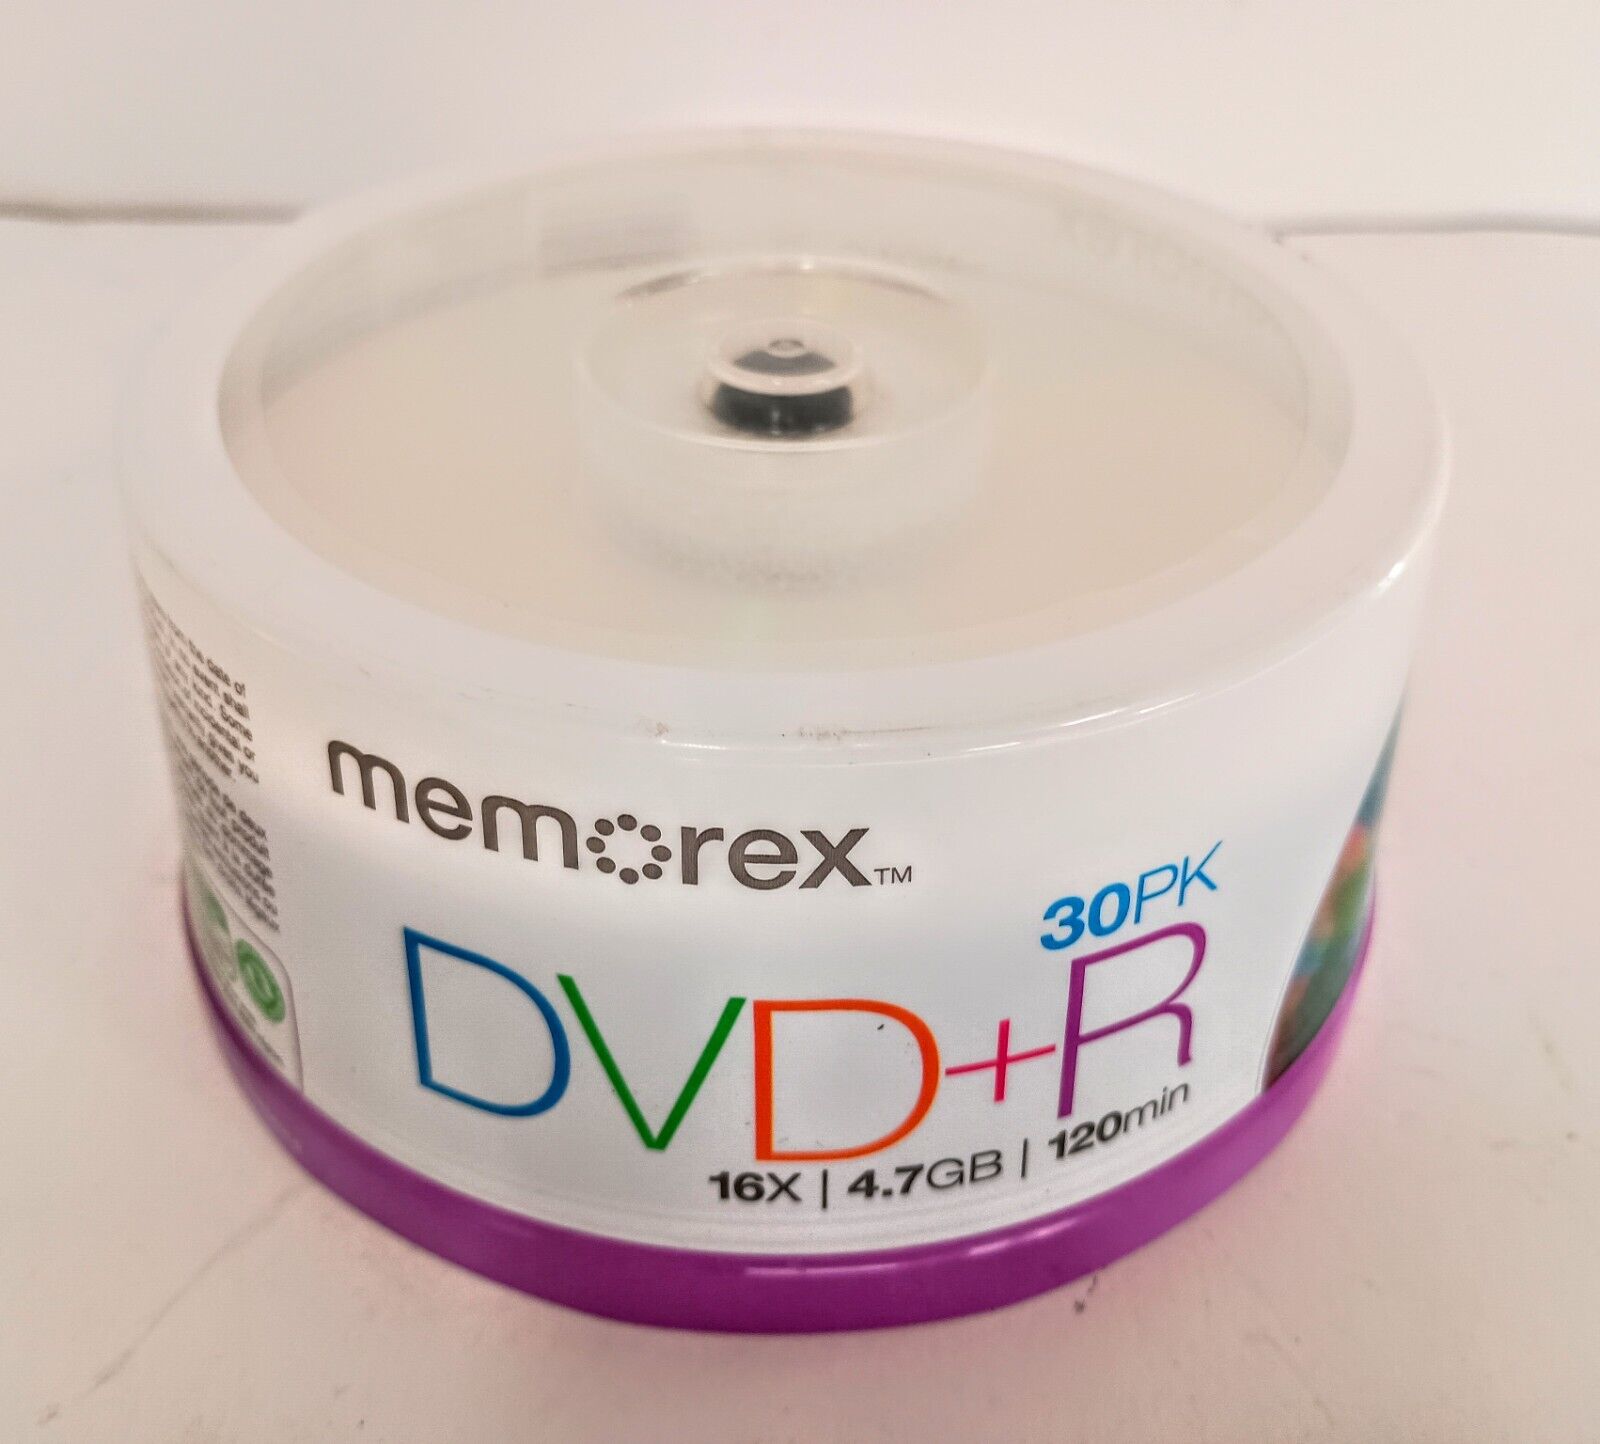 Memorex DVD+R 120 Min 16x 4.7 GB (30-Pack) New ITEM- Sealed